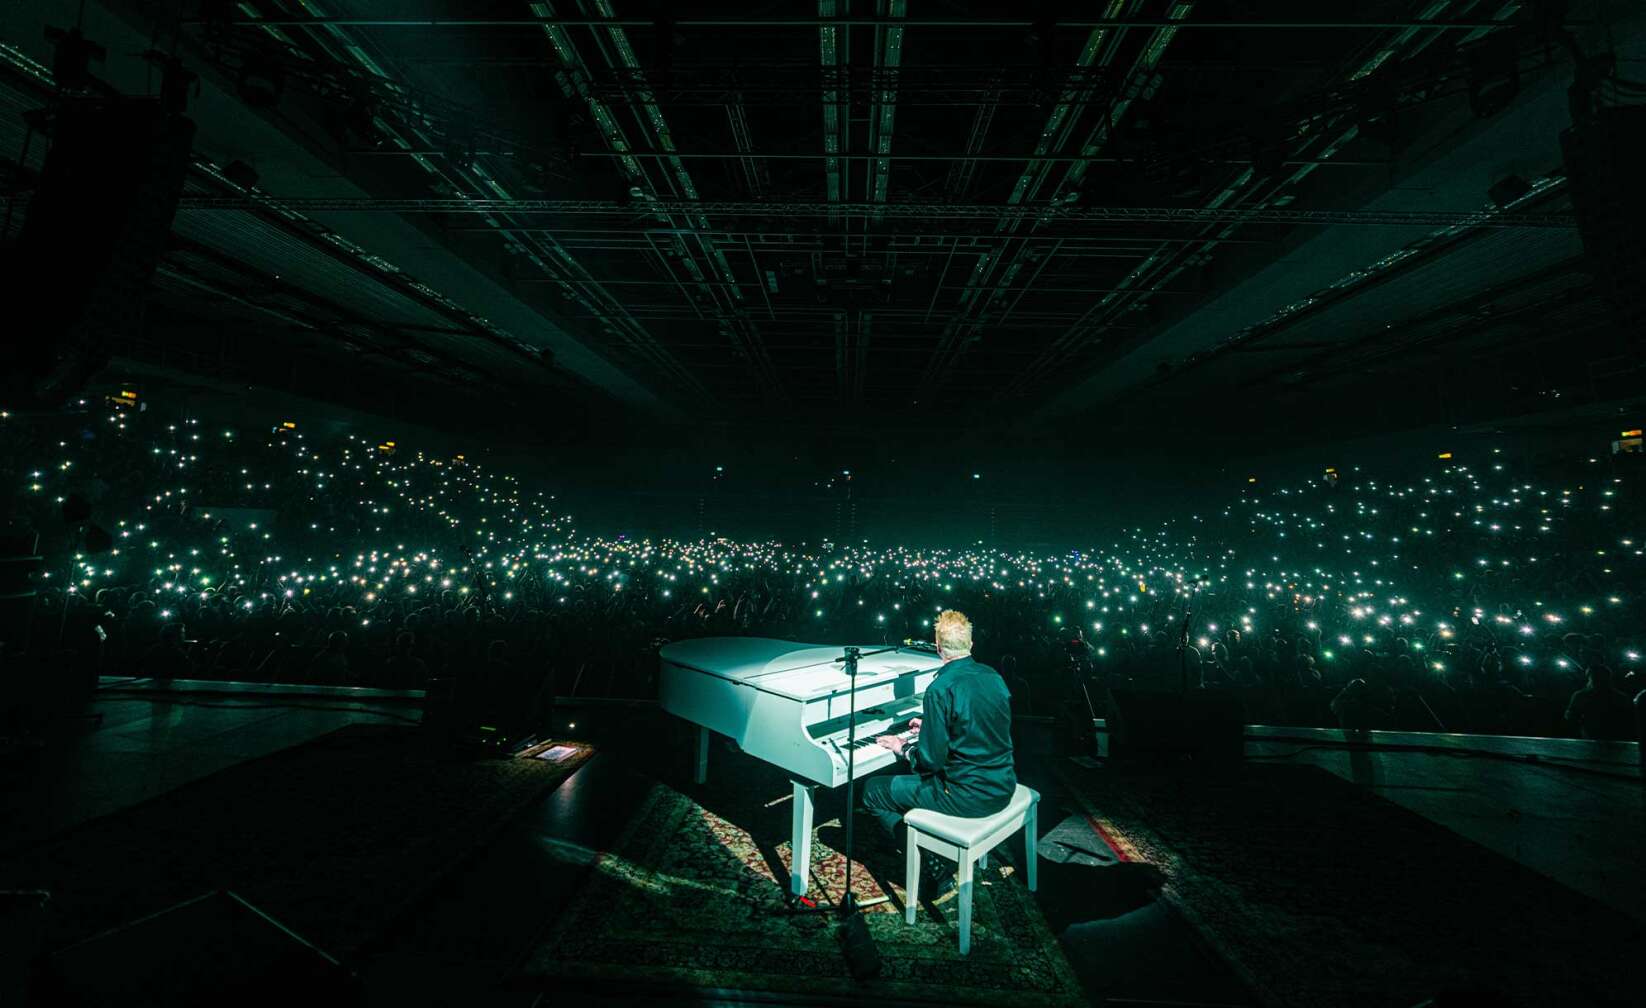 Fotos vom Konzert von The Offspring am 17. Mai 2023 in Hamburg